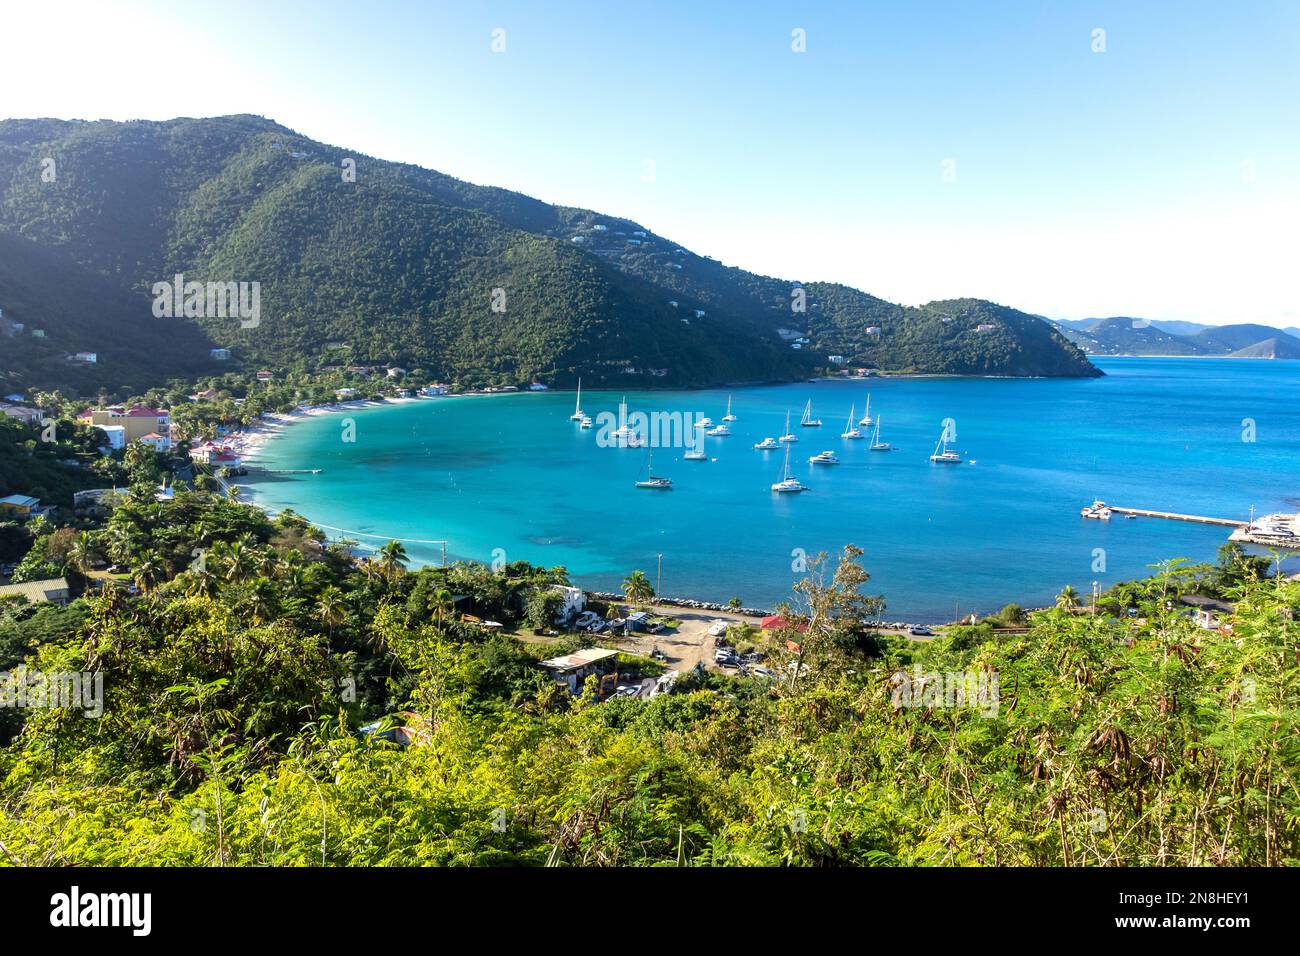 Cane Garden Bay, Tortola, Britische Jungferninseln (BVI), kleine Antillen, Karibik Stockfoto